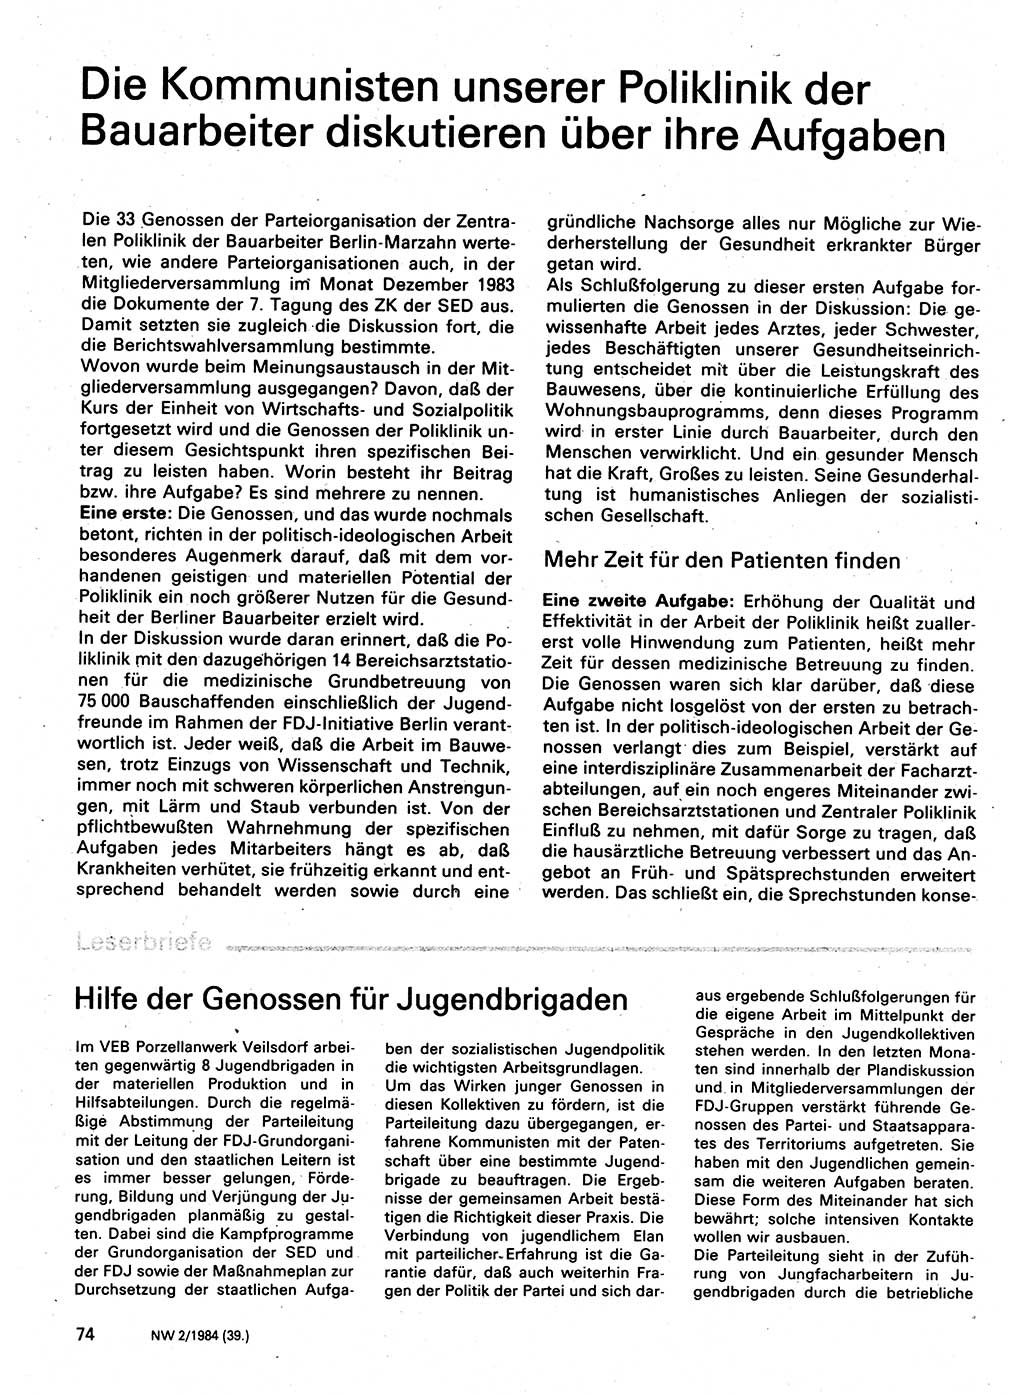 Neuer Weg (NW), Organ des Zentralkomitees (ZK) der SED (Sozialistische Einheitspartei Deutschlands) für Fragen des Parteilebens, 39. Jahrgang [Deutsche Demokratische Republik (DDR)] 1984, Seite 74 (NW ZK SED DDR 1984, S. 74)